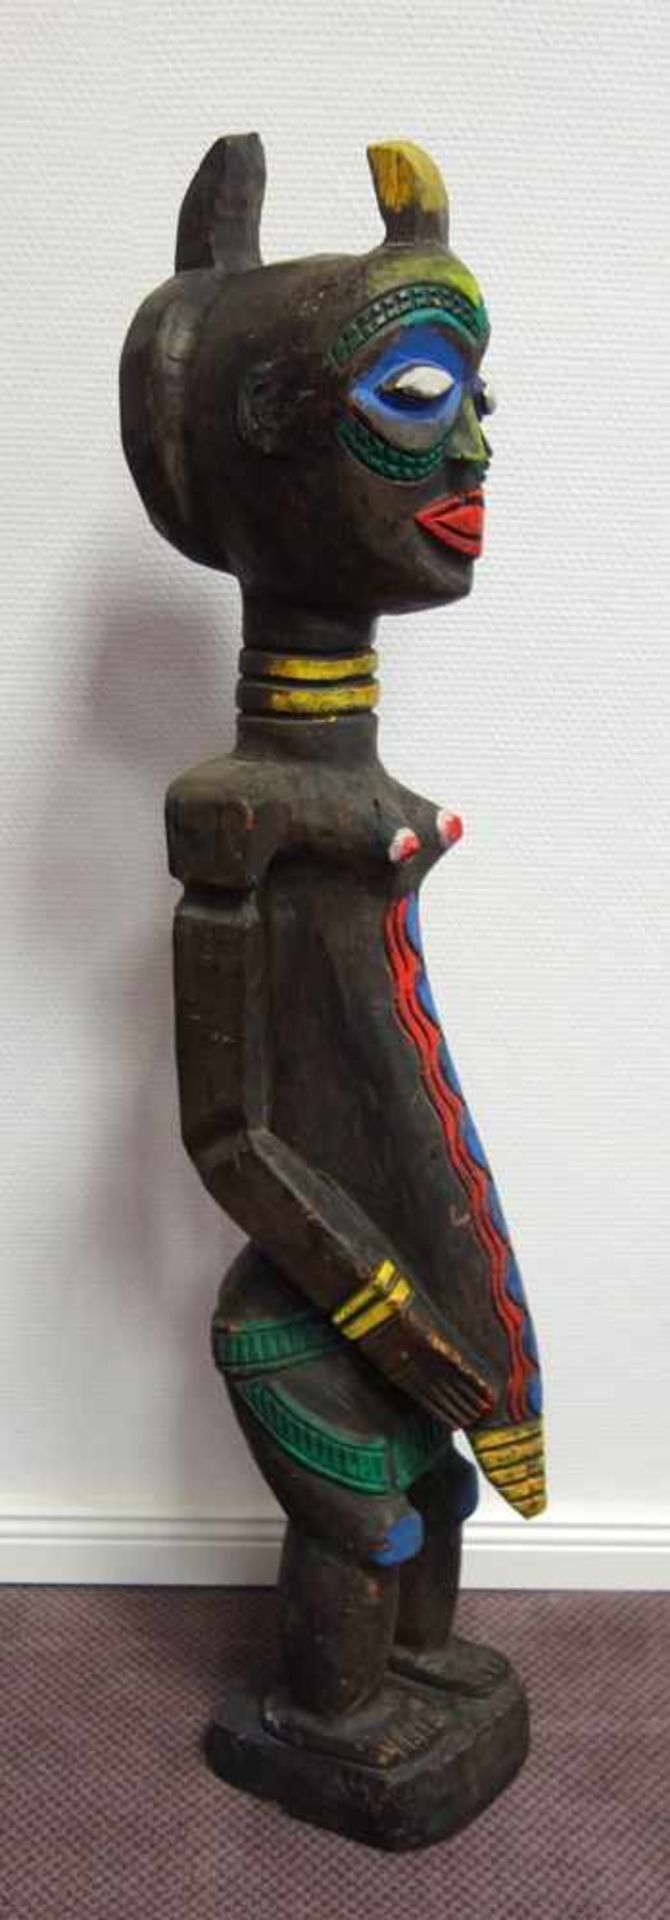 Fruchtbarkeitsstatue, Afrika, wohl Anf.20.Jh., Weichholz, vollplastisch geschnitzte, abstrahierte, - Image 2 of 2